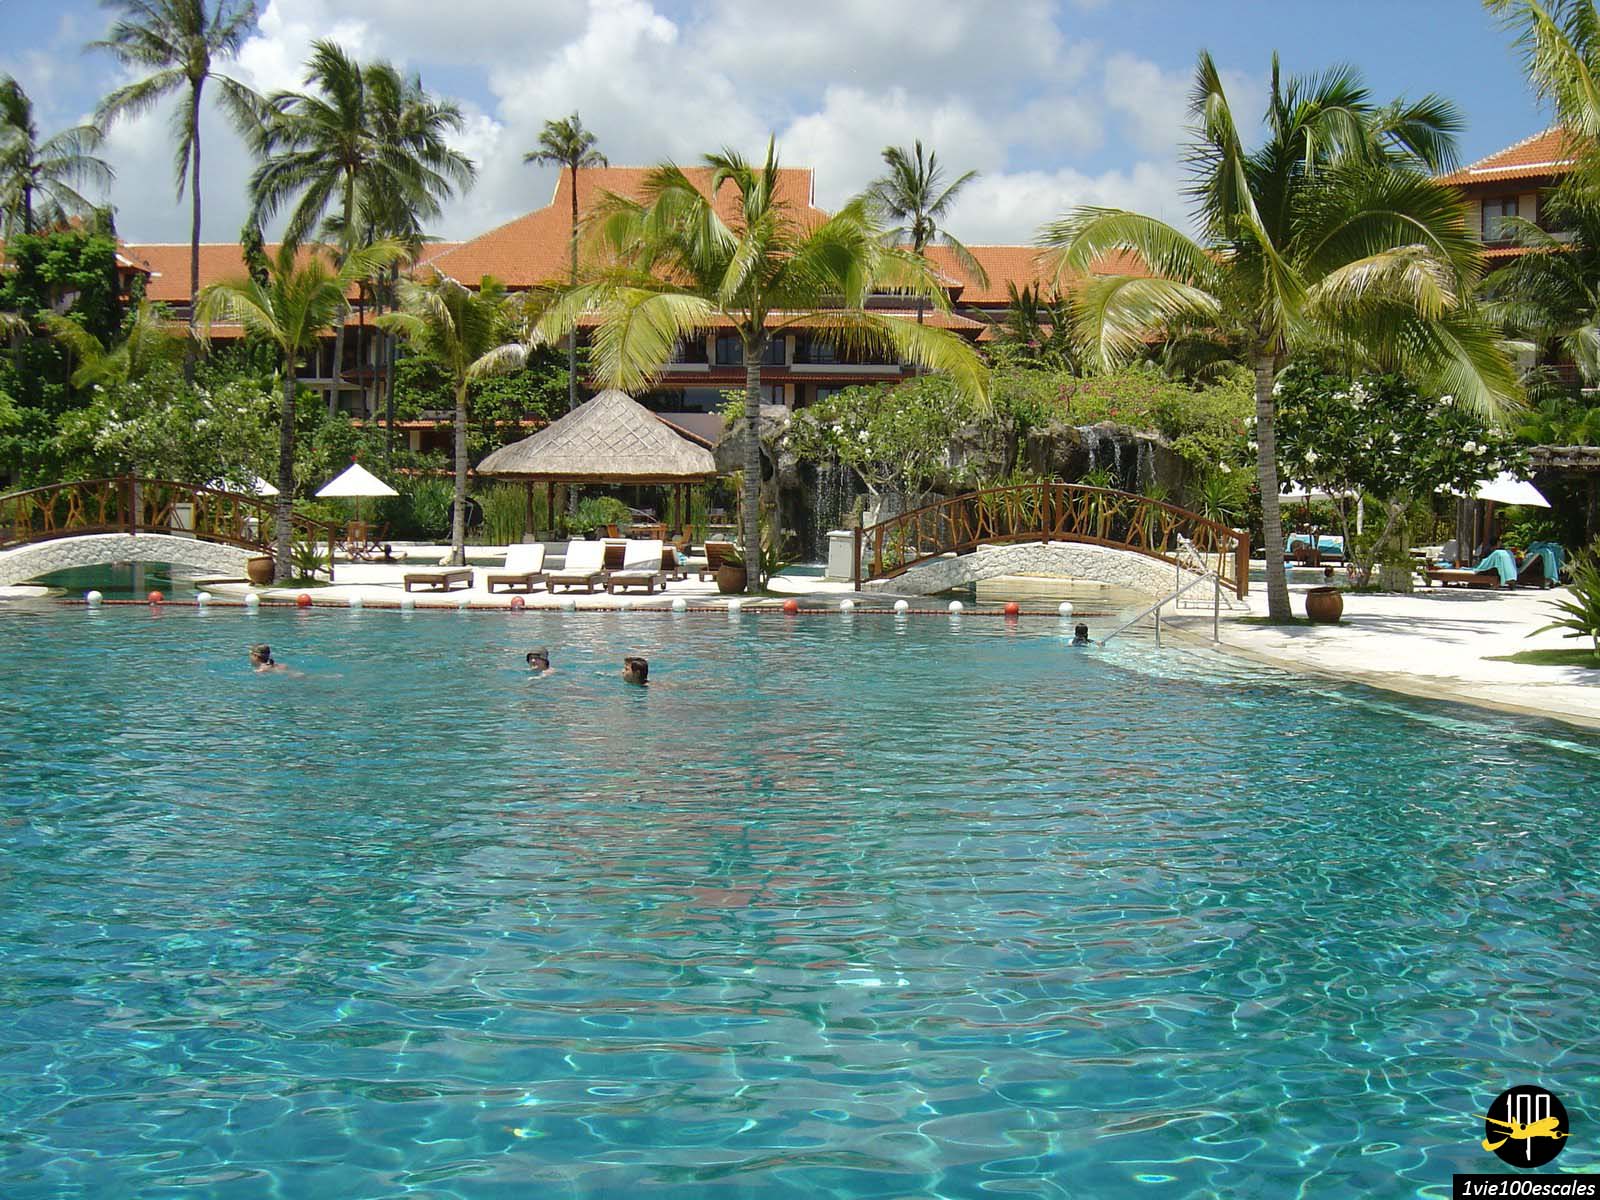 La grande piscine du Westin Resort Nusa Dua Bali permet de nager et se rafraichir lors des journées chaudes